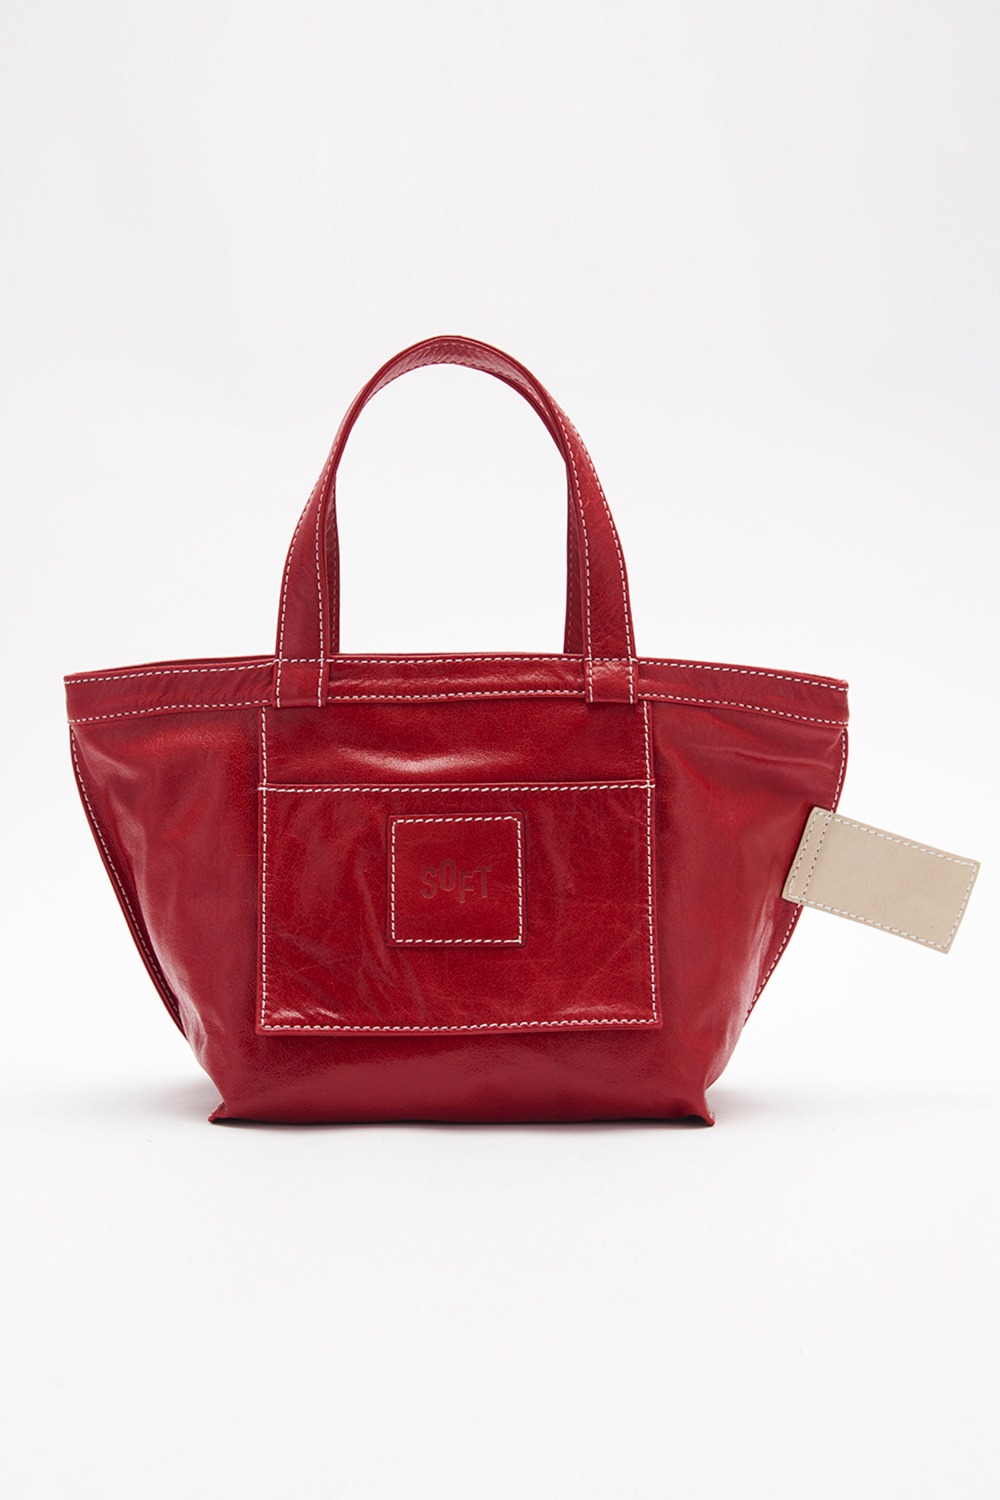 soft market bag - red